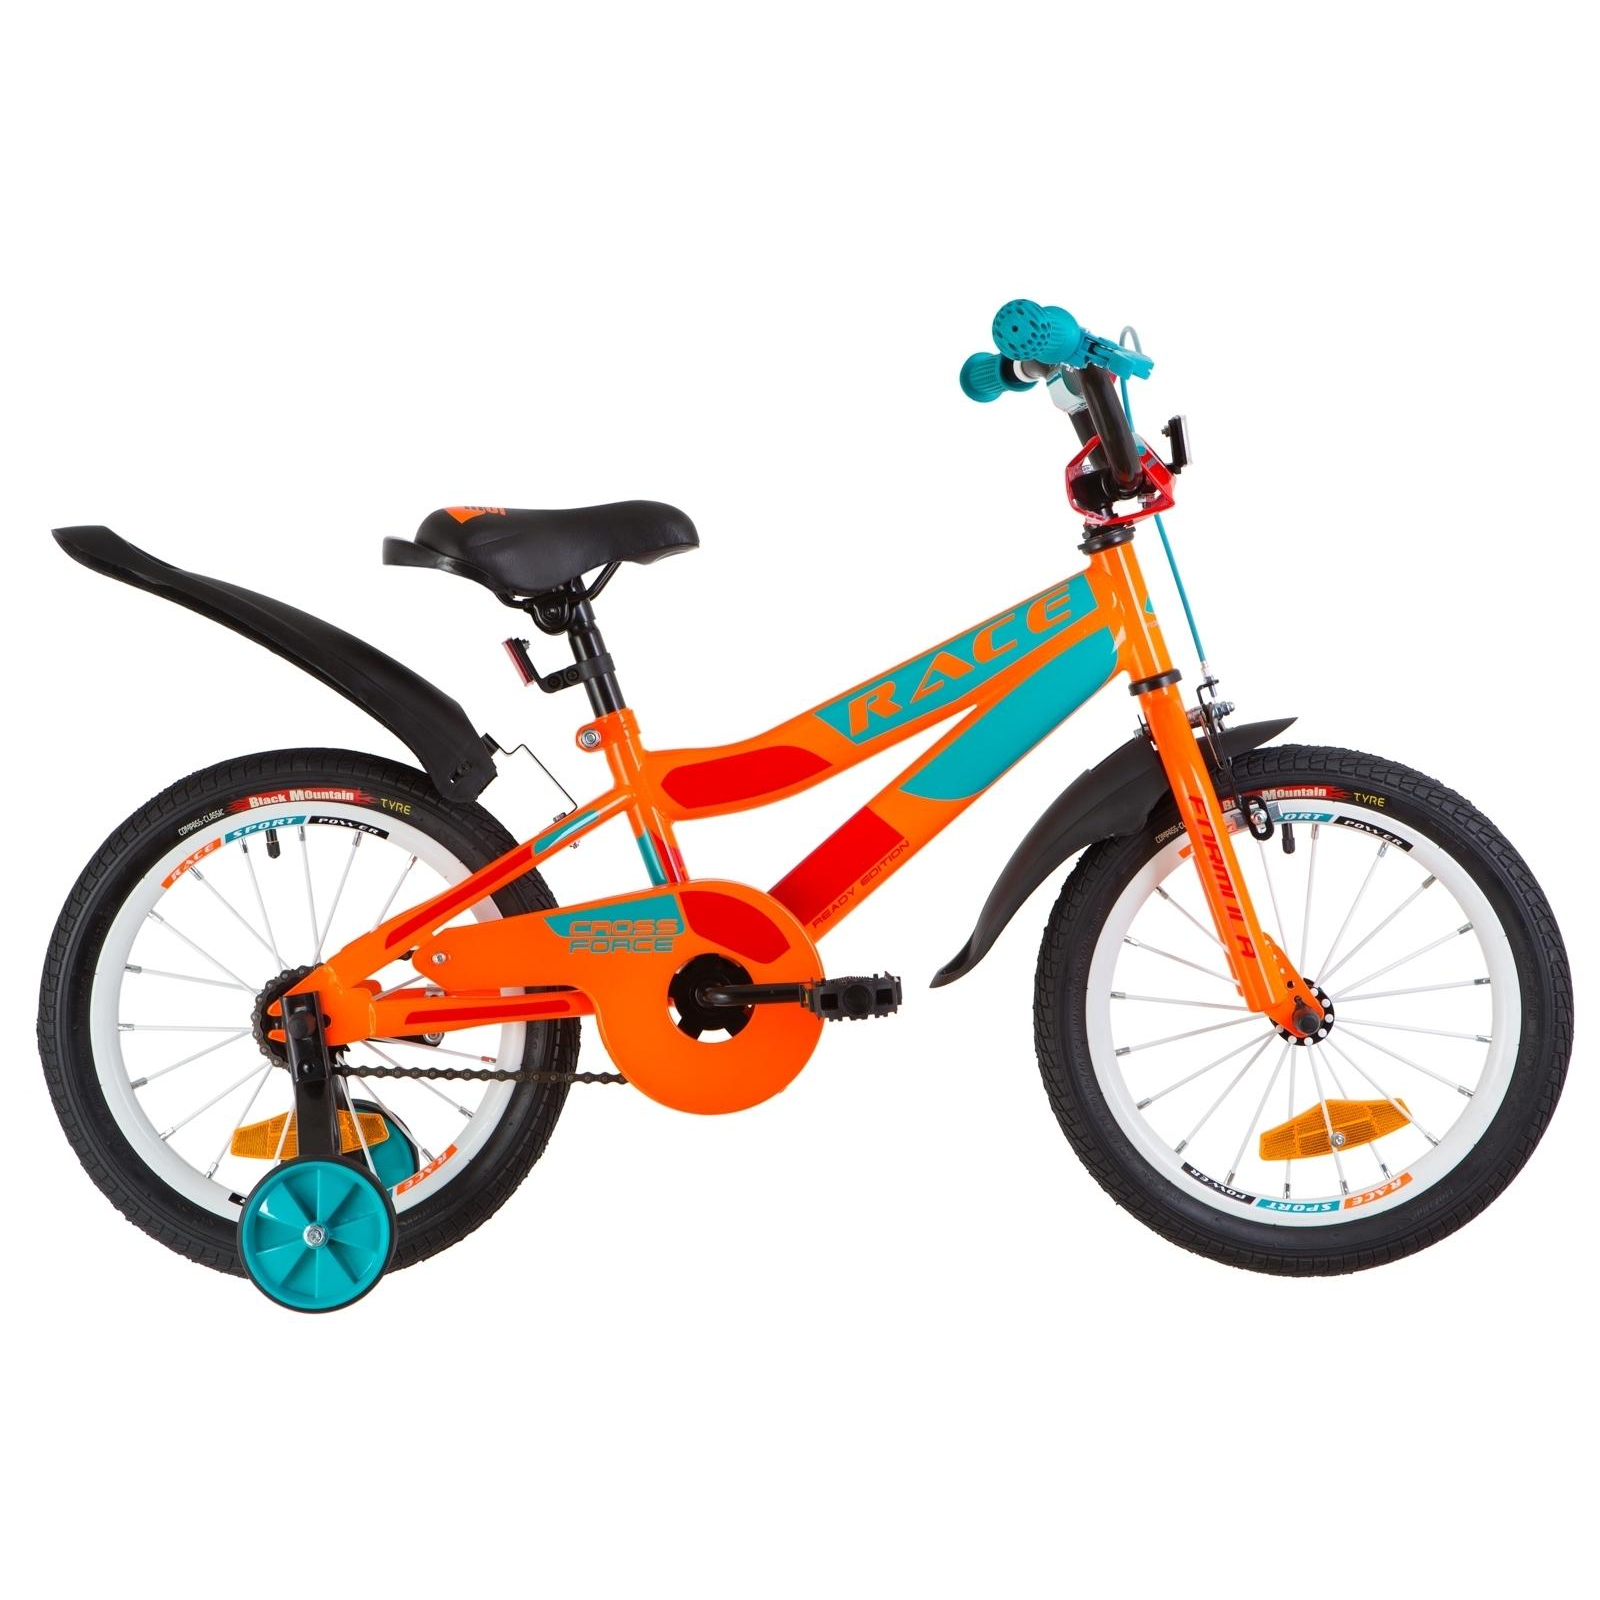 Дитячий велосипед Formula 16" RACE рама-9" 2019 оранжево-бирюзовый (OPS-FRK-16-072)